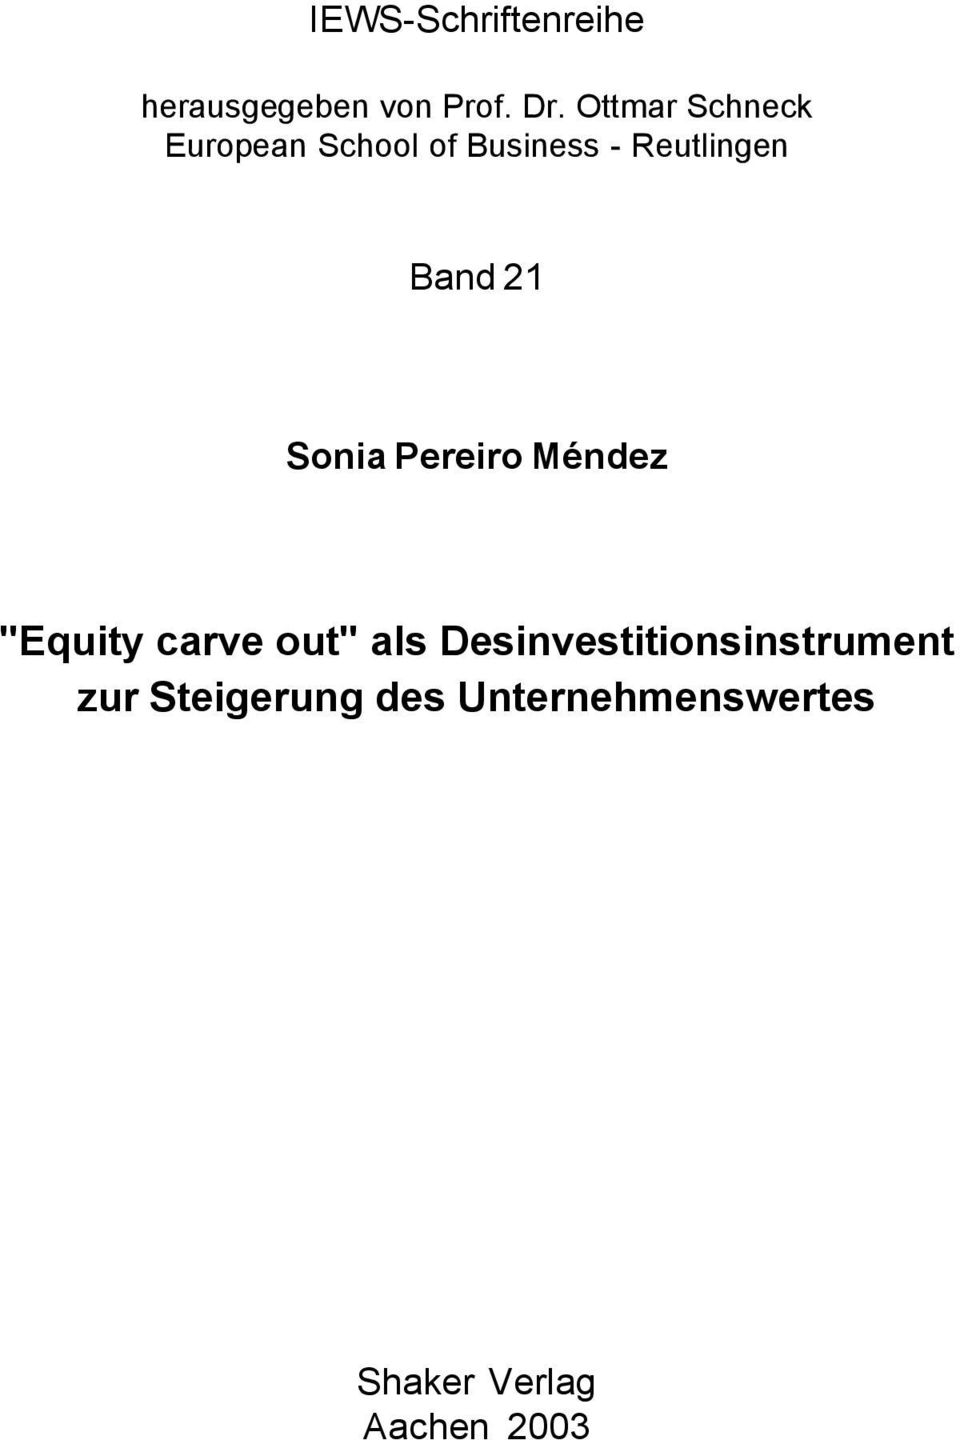 21 Sonia Pereiro Méndez "Equity carve out" als